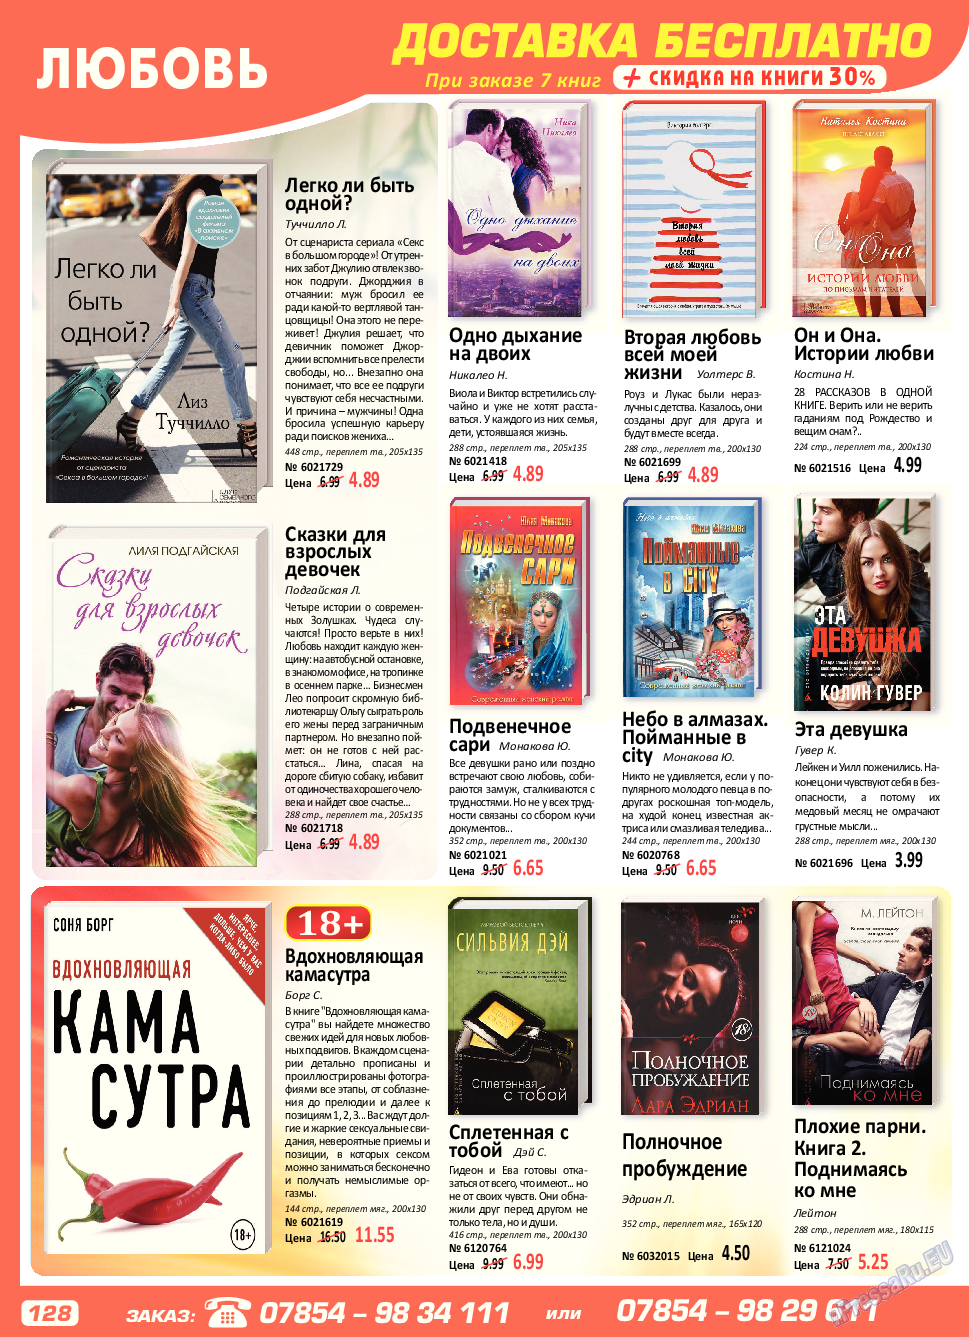 Panorama-mir (журнал). 2017 год, номер 7, стр. 128